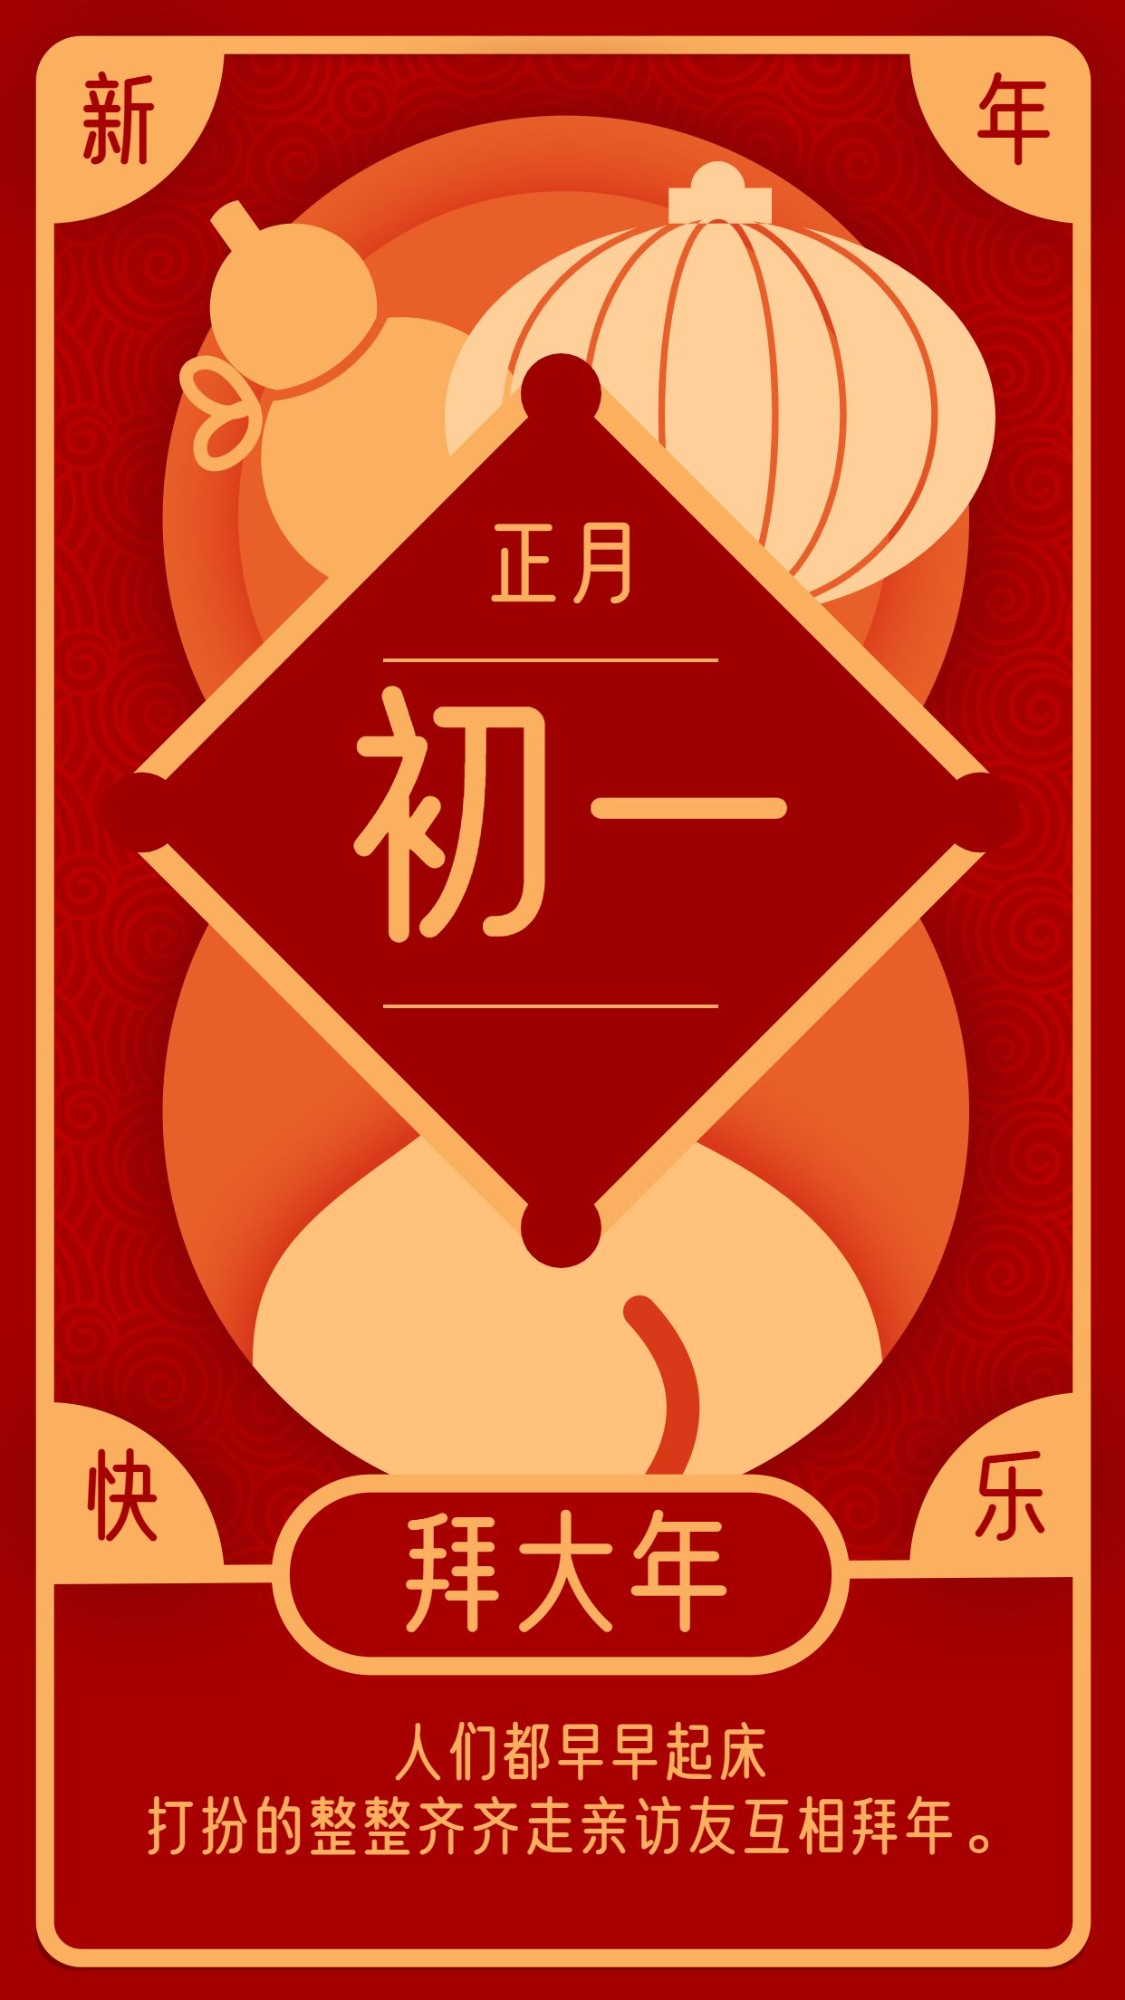 春节习俗套系初一手机海报